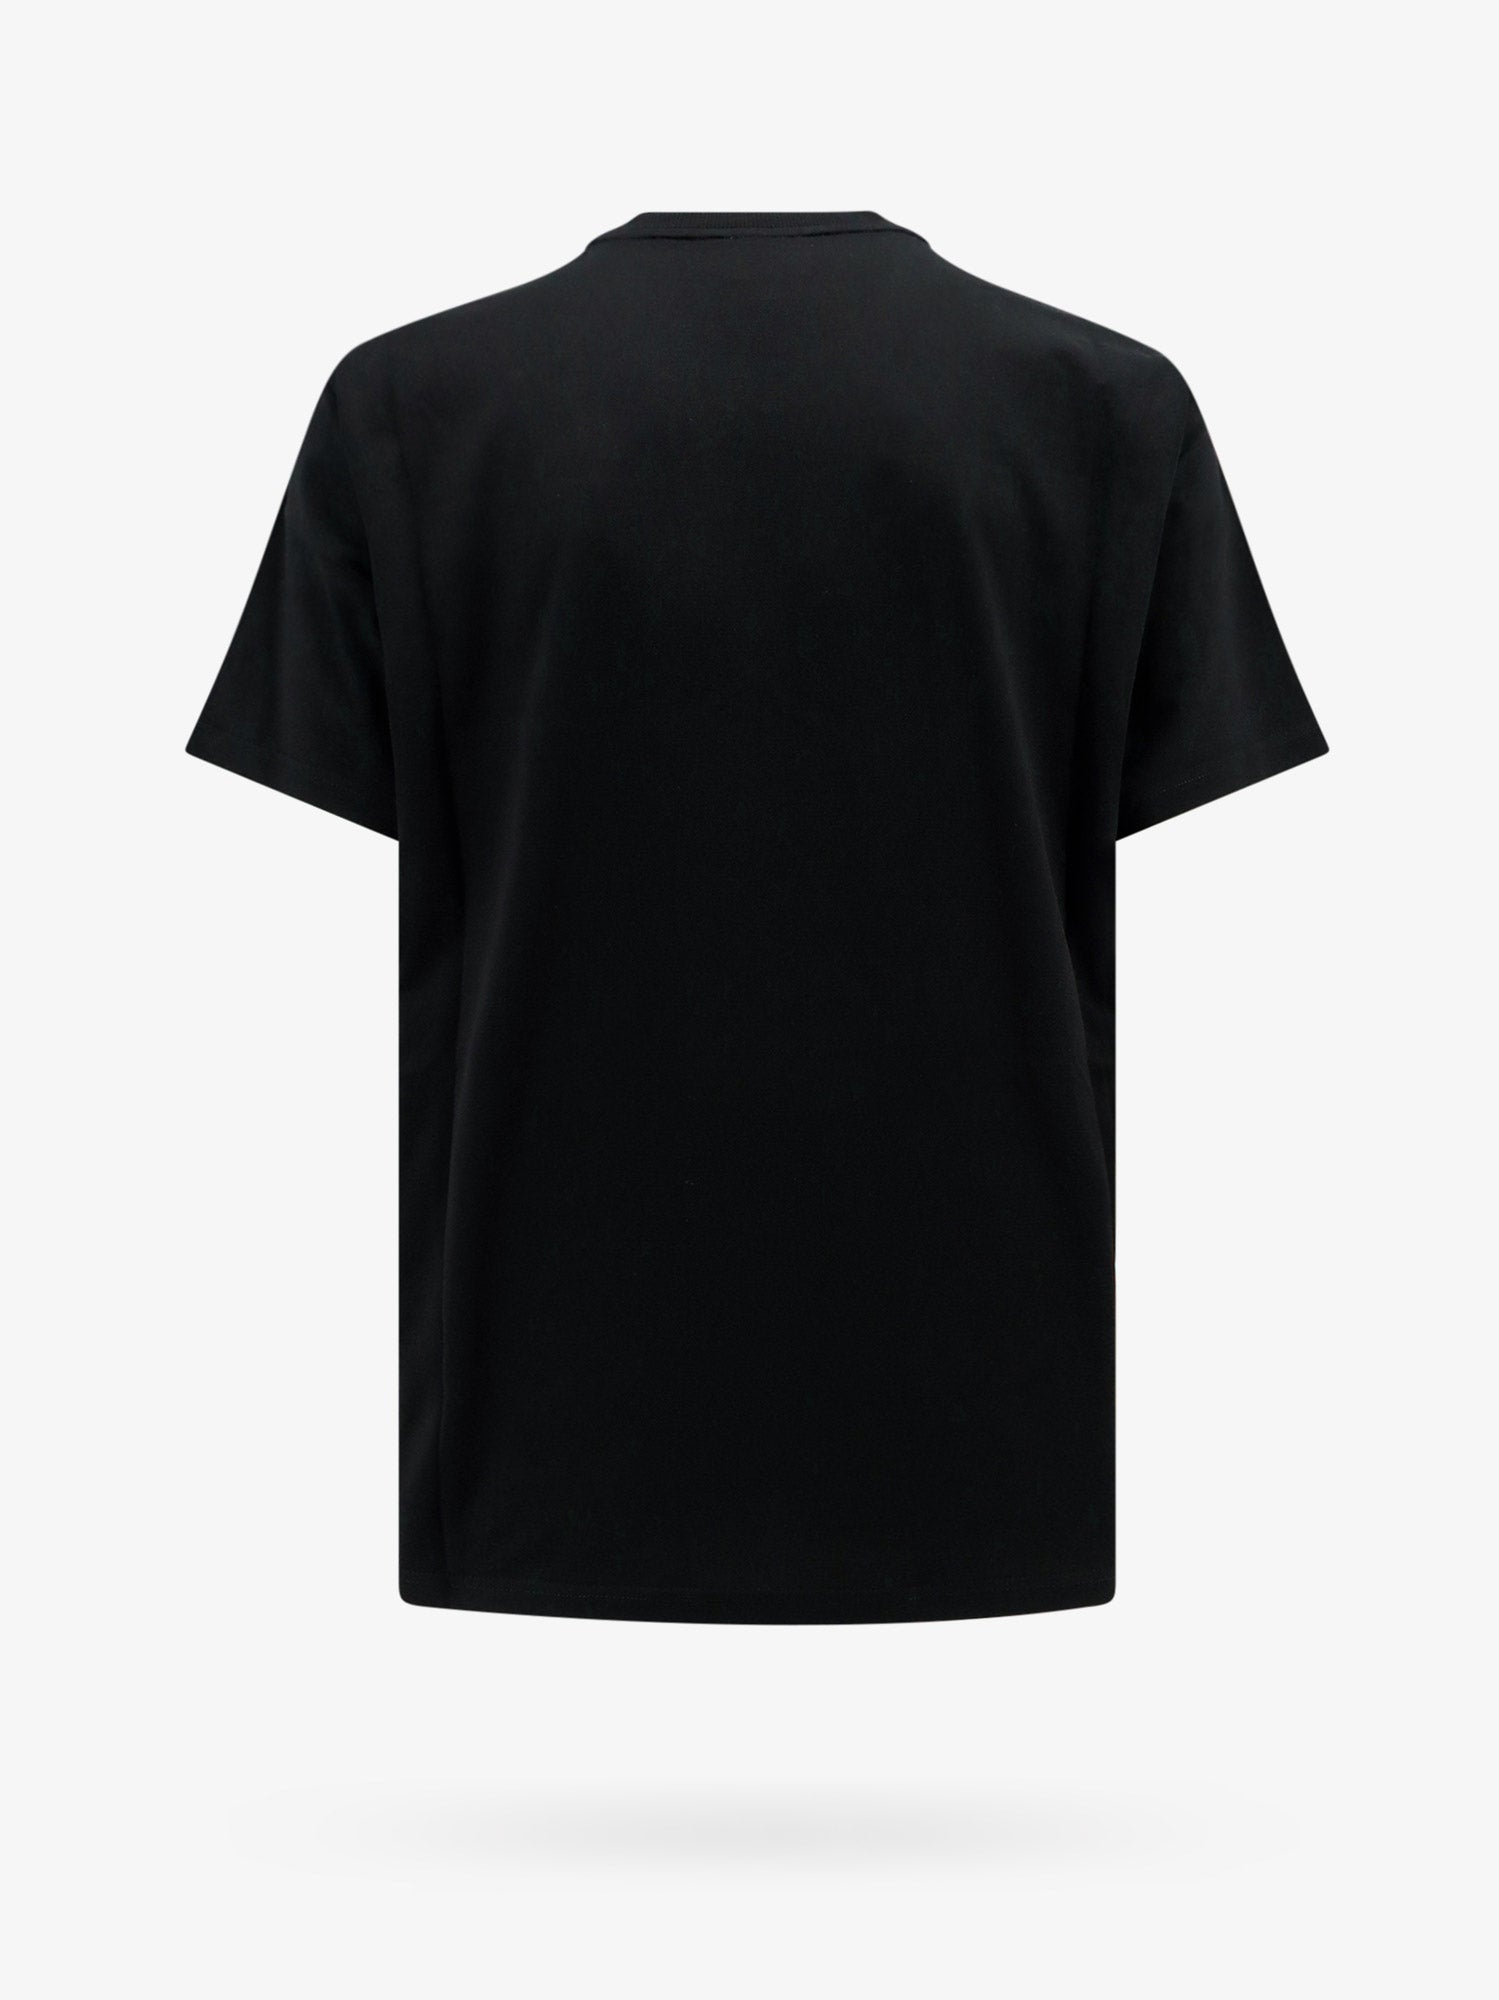 Burberry Man T-Shirt Man Black T-Shirts - 2